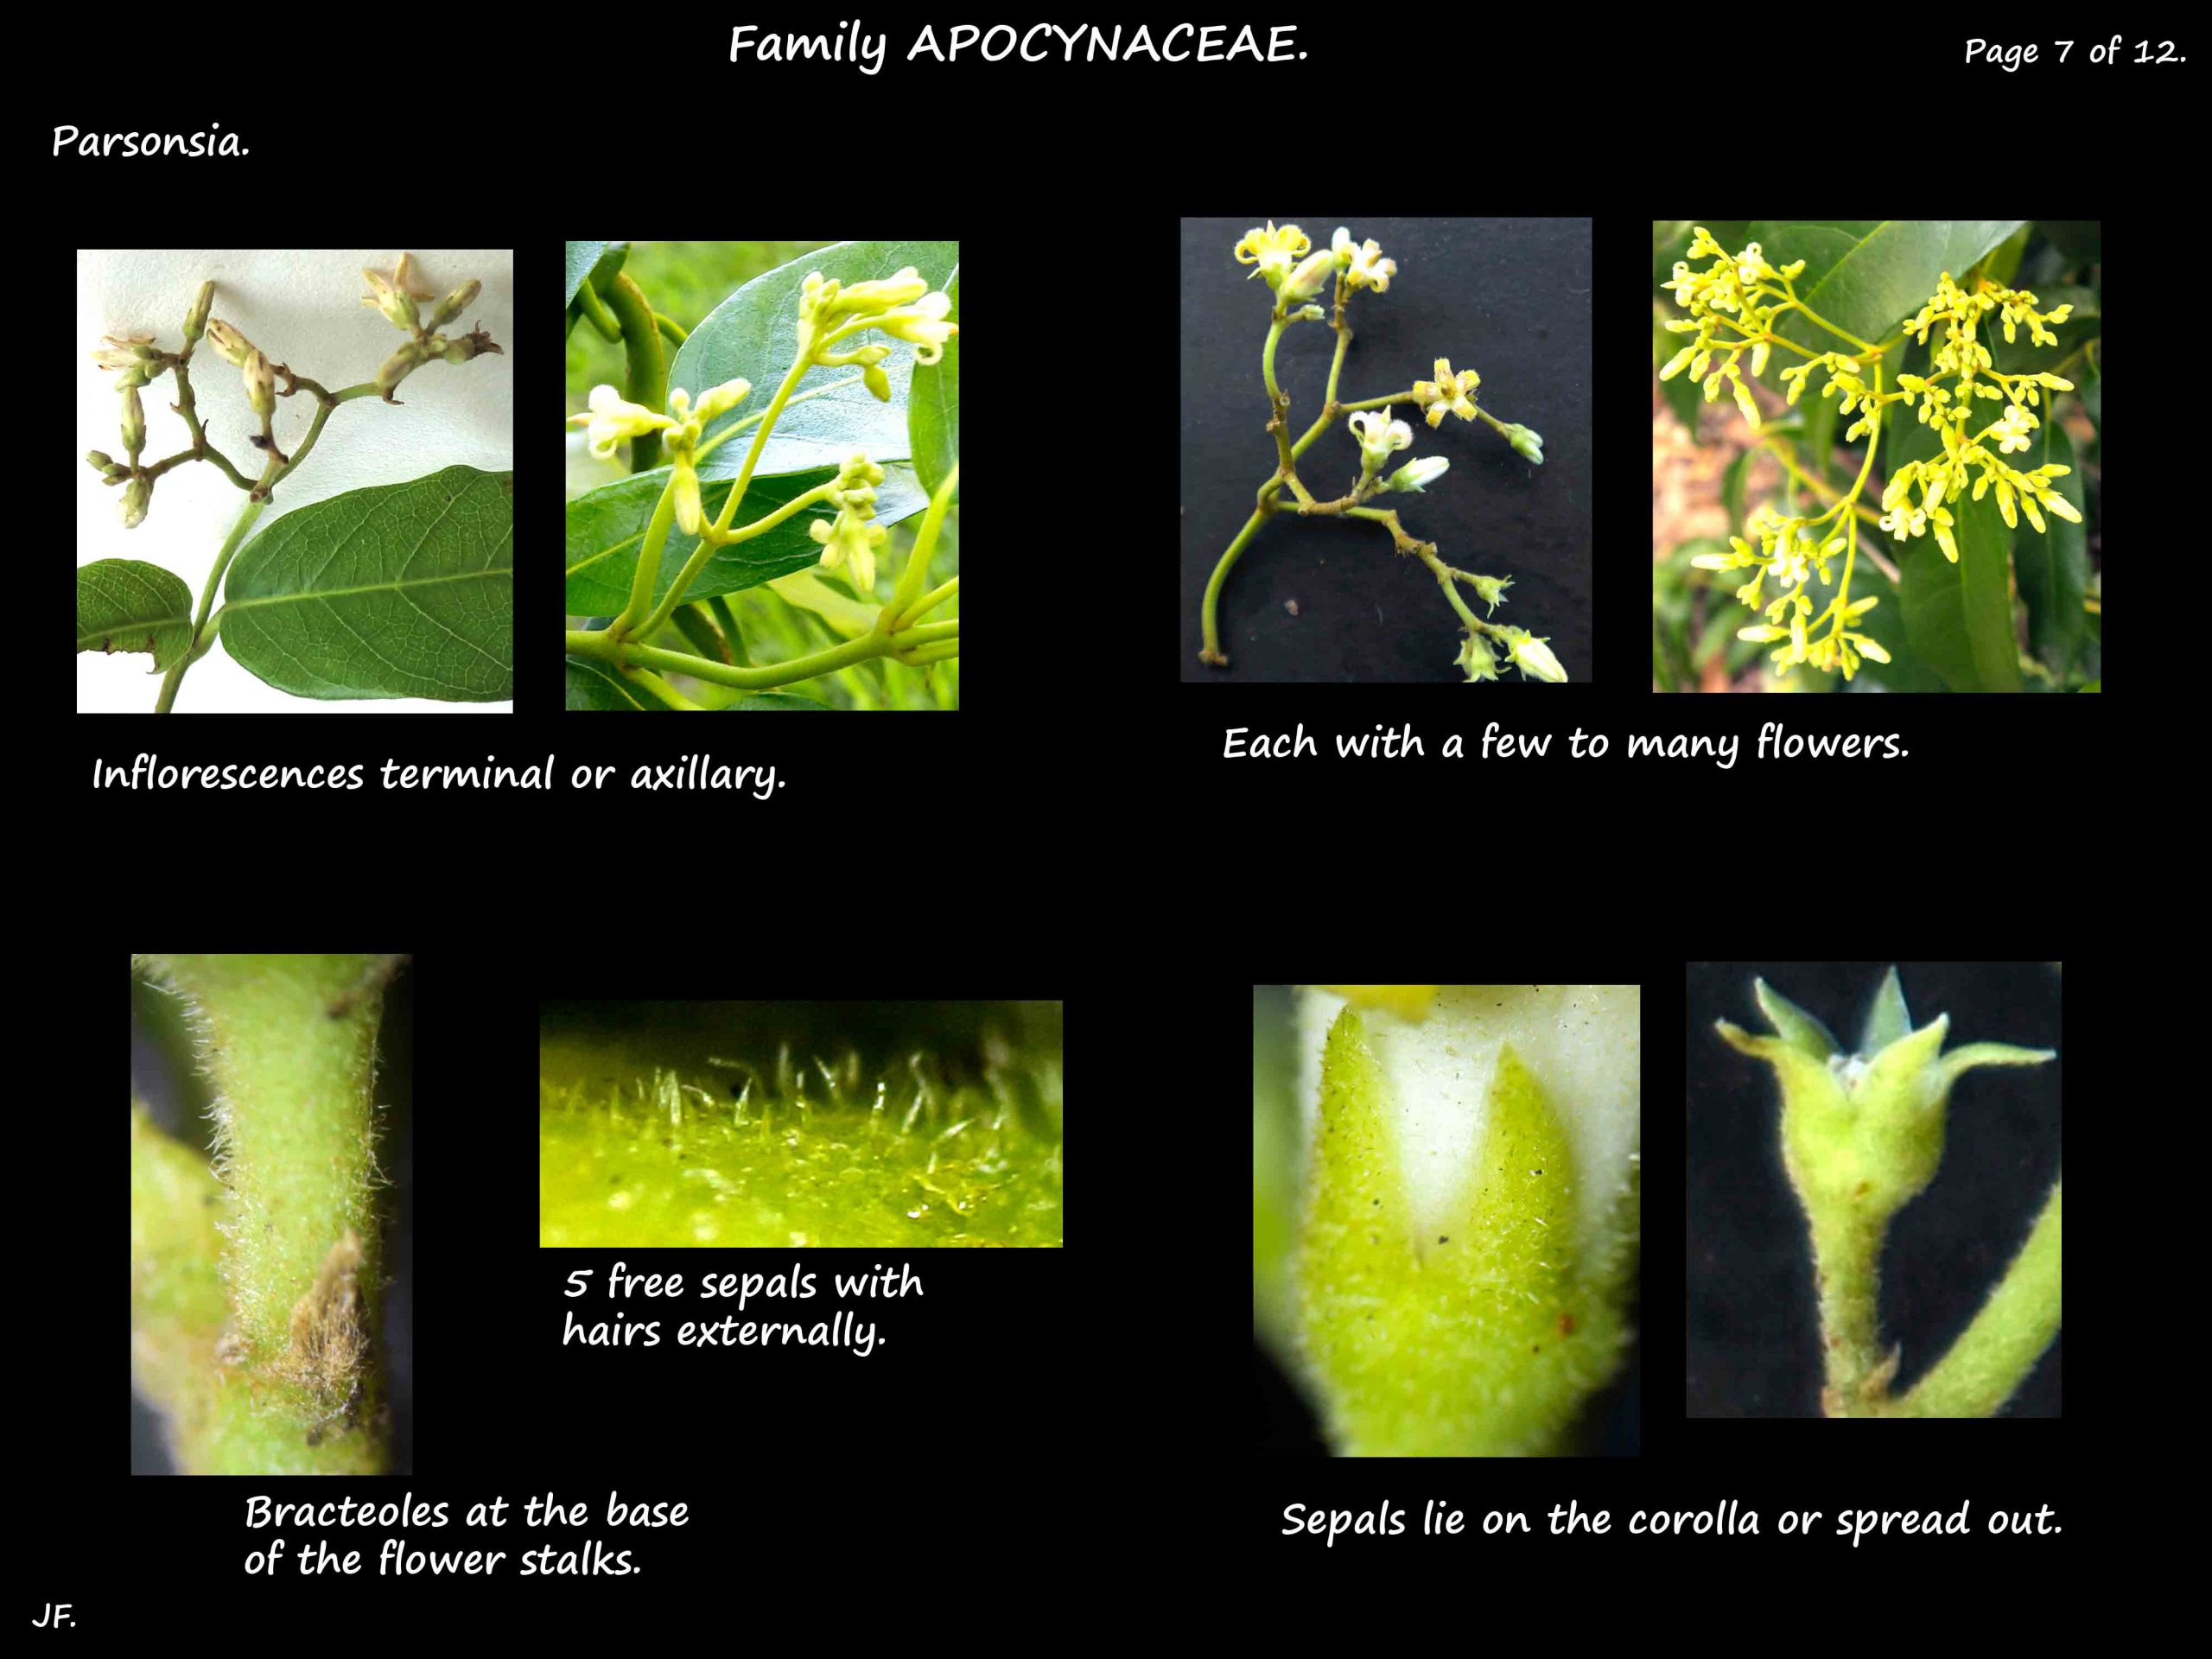 7 Parsonsia inflorescences & sepals